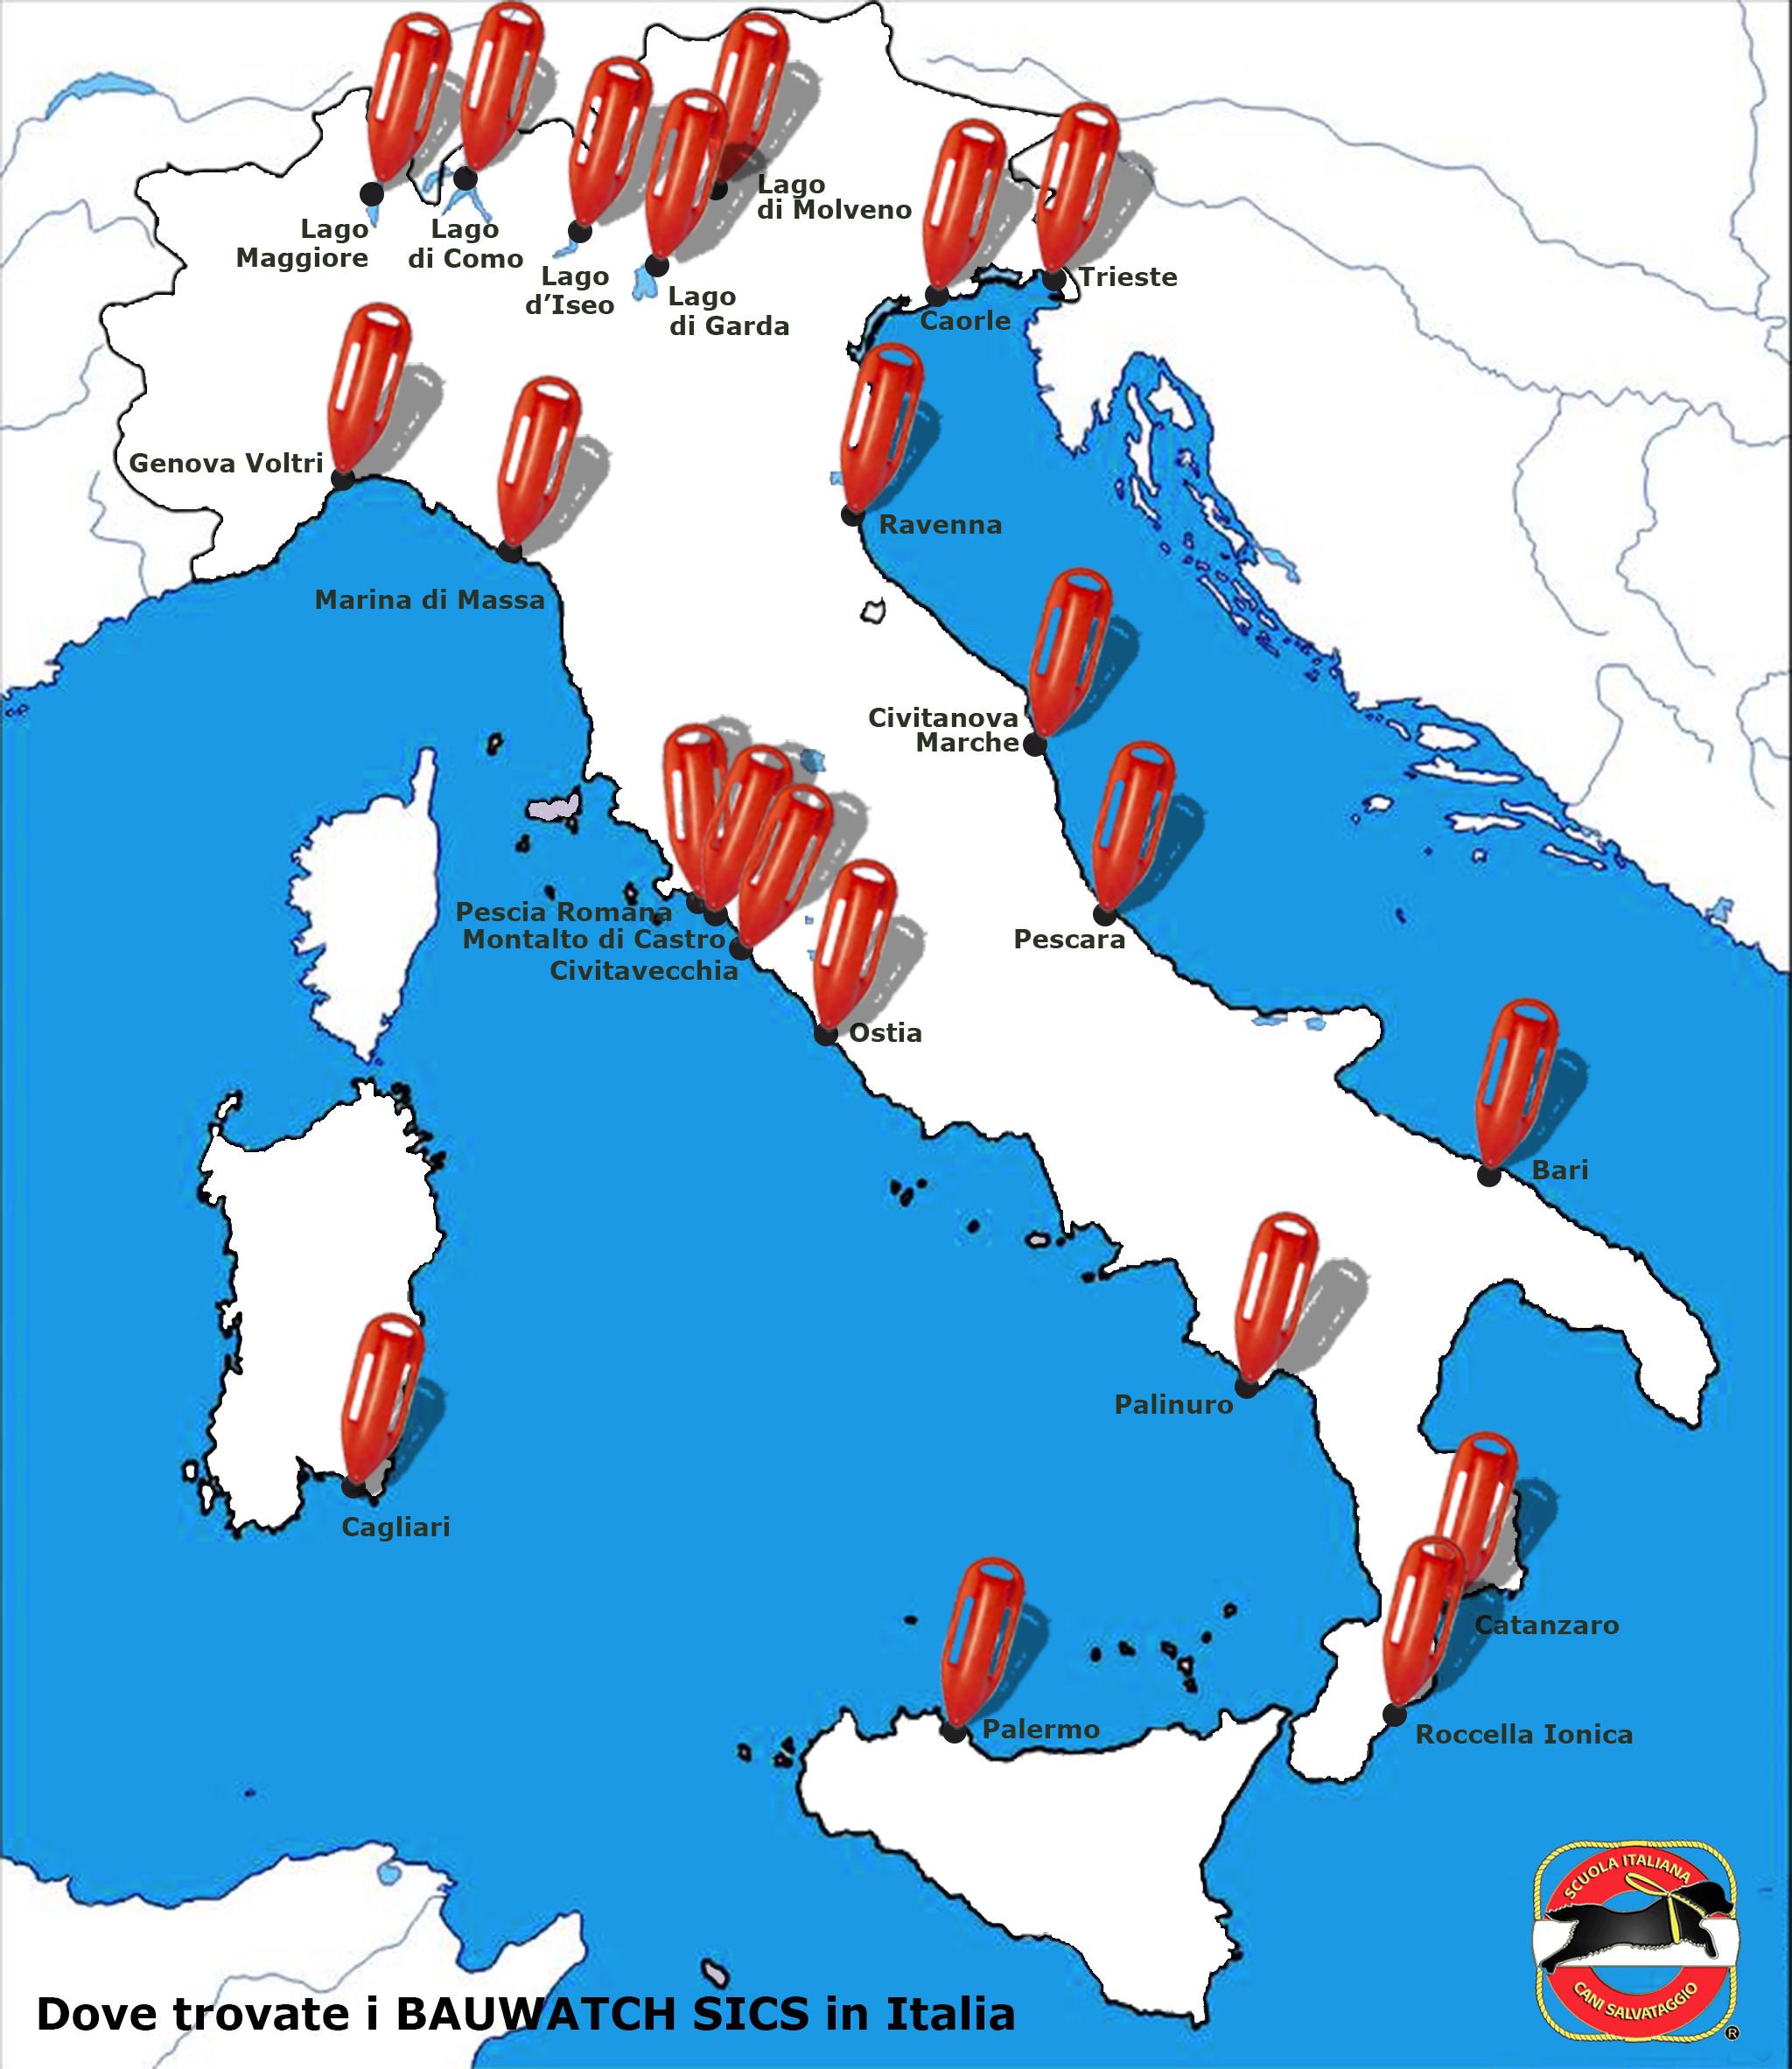 La mappa dei Bauwatch Sics in Italia